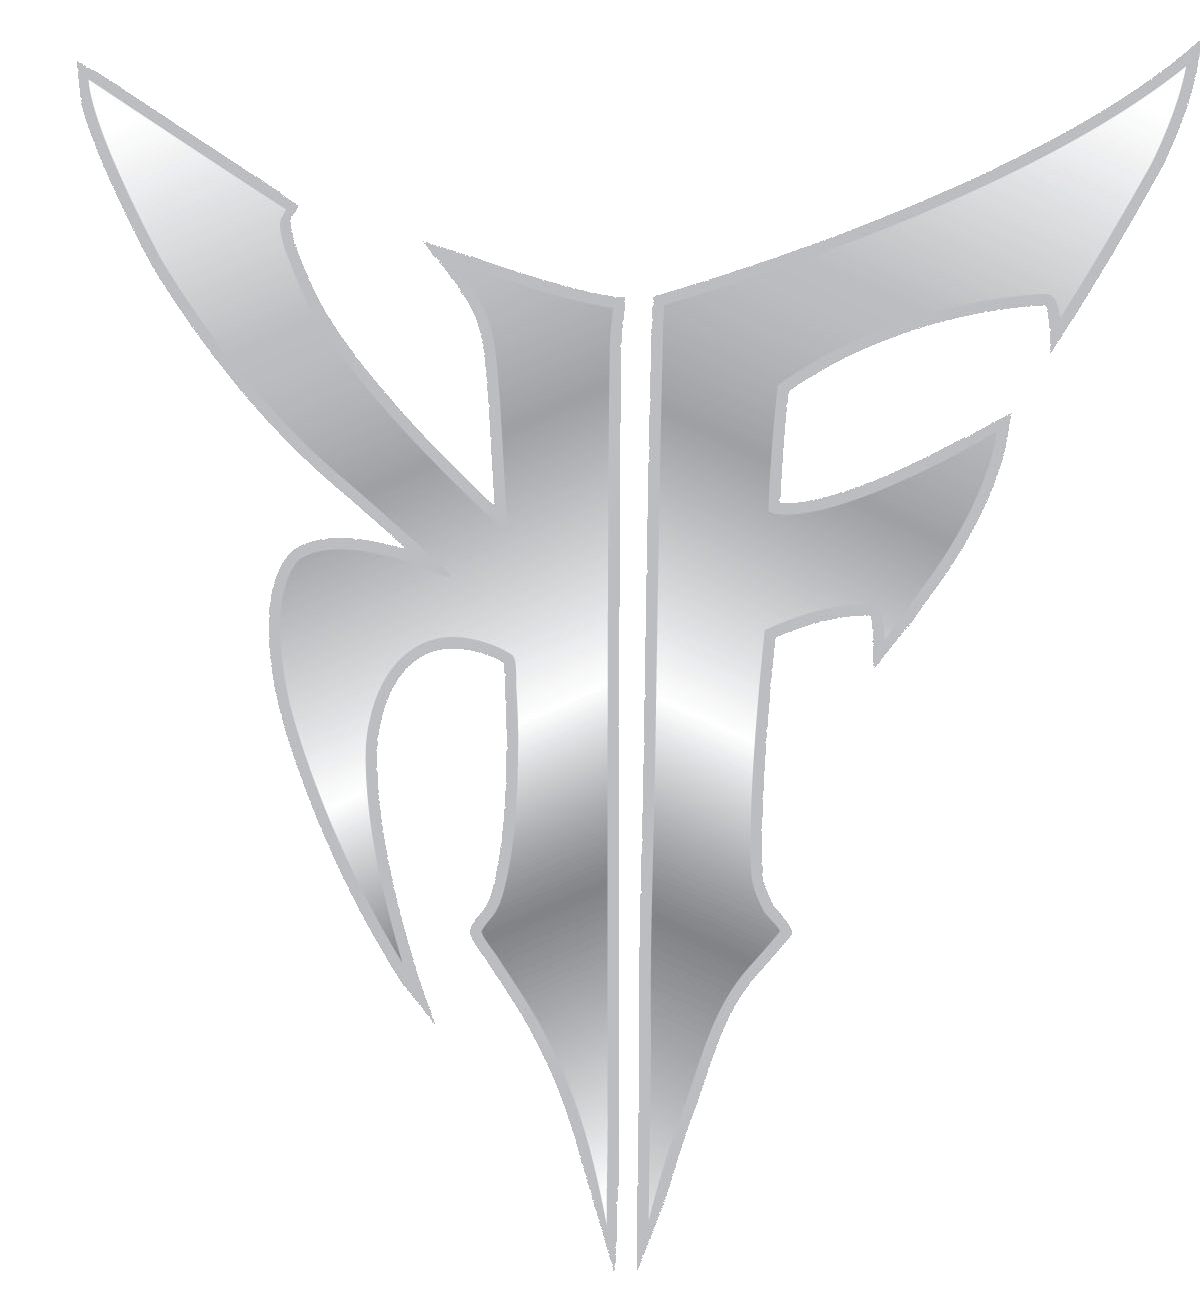 KF Logo - Kingz files: My site logo KF